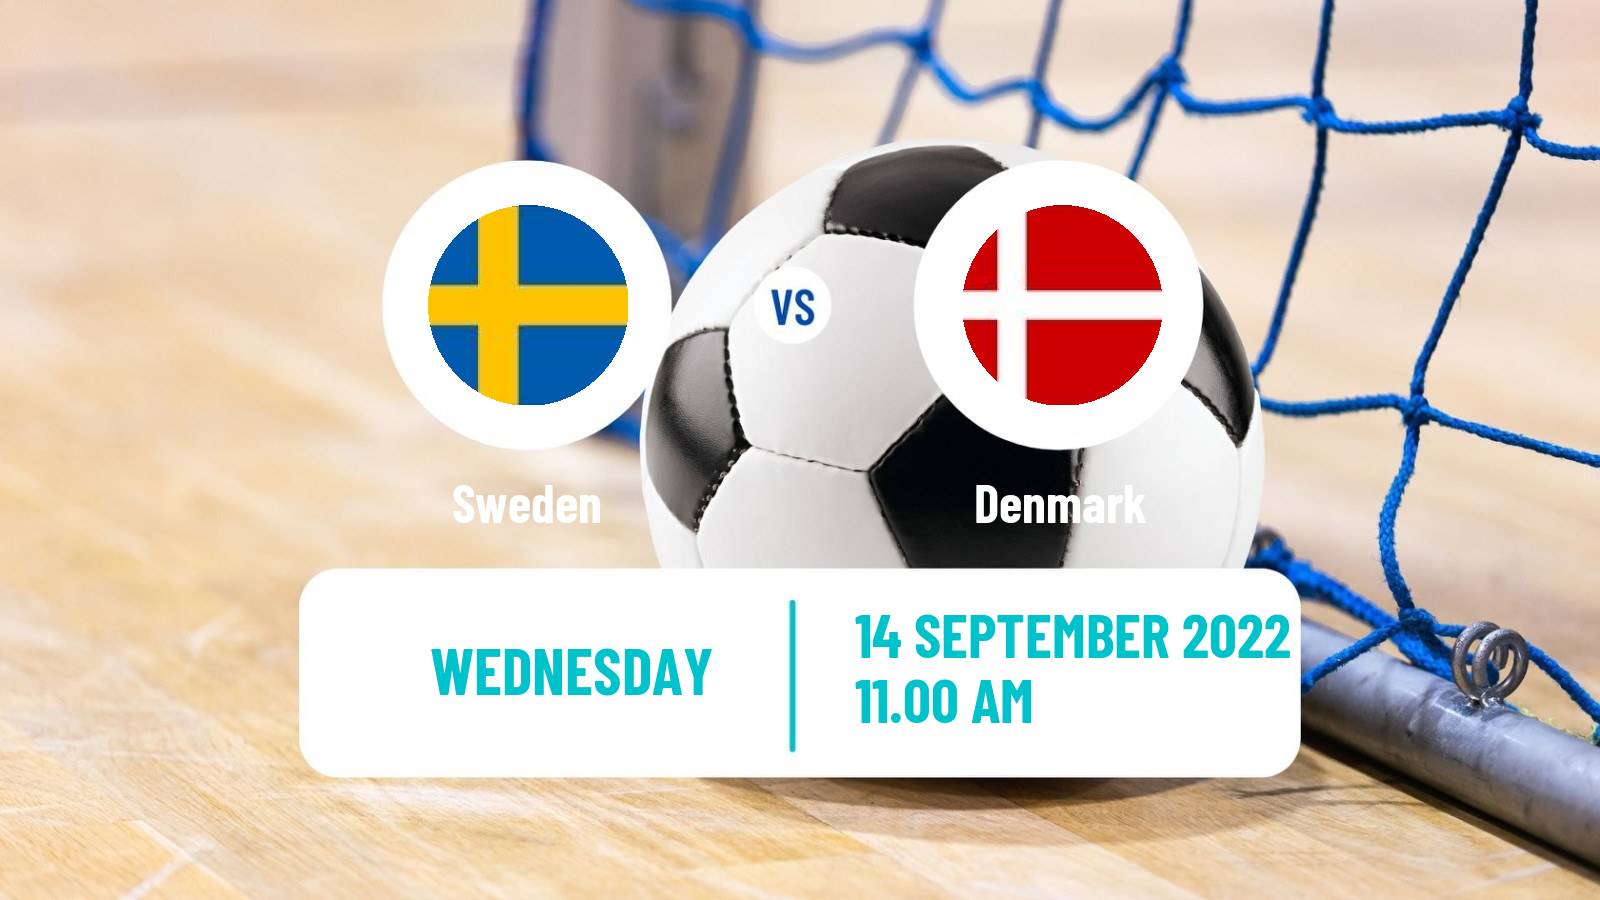 Futsal Friendly International Futsal Sweden - Denmark